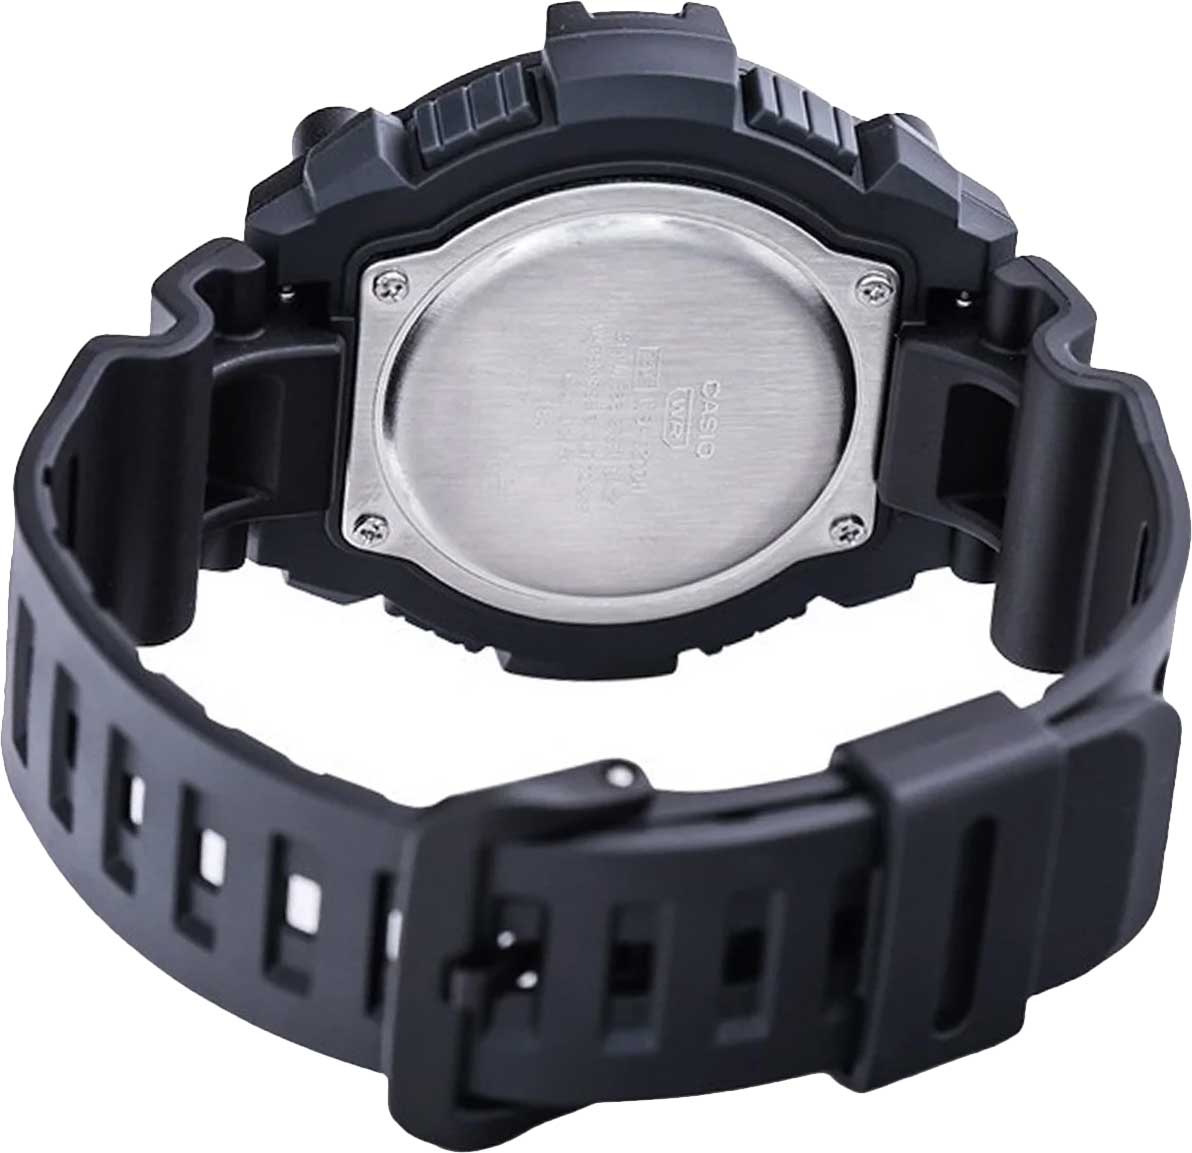 Наручные часы Casio в цене, Collection характеристики, WS-1300H-1AVEF купить фото, интернет-магазине AllTime.ru лучшей описание — по